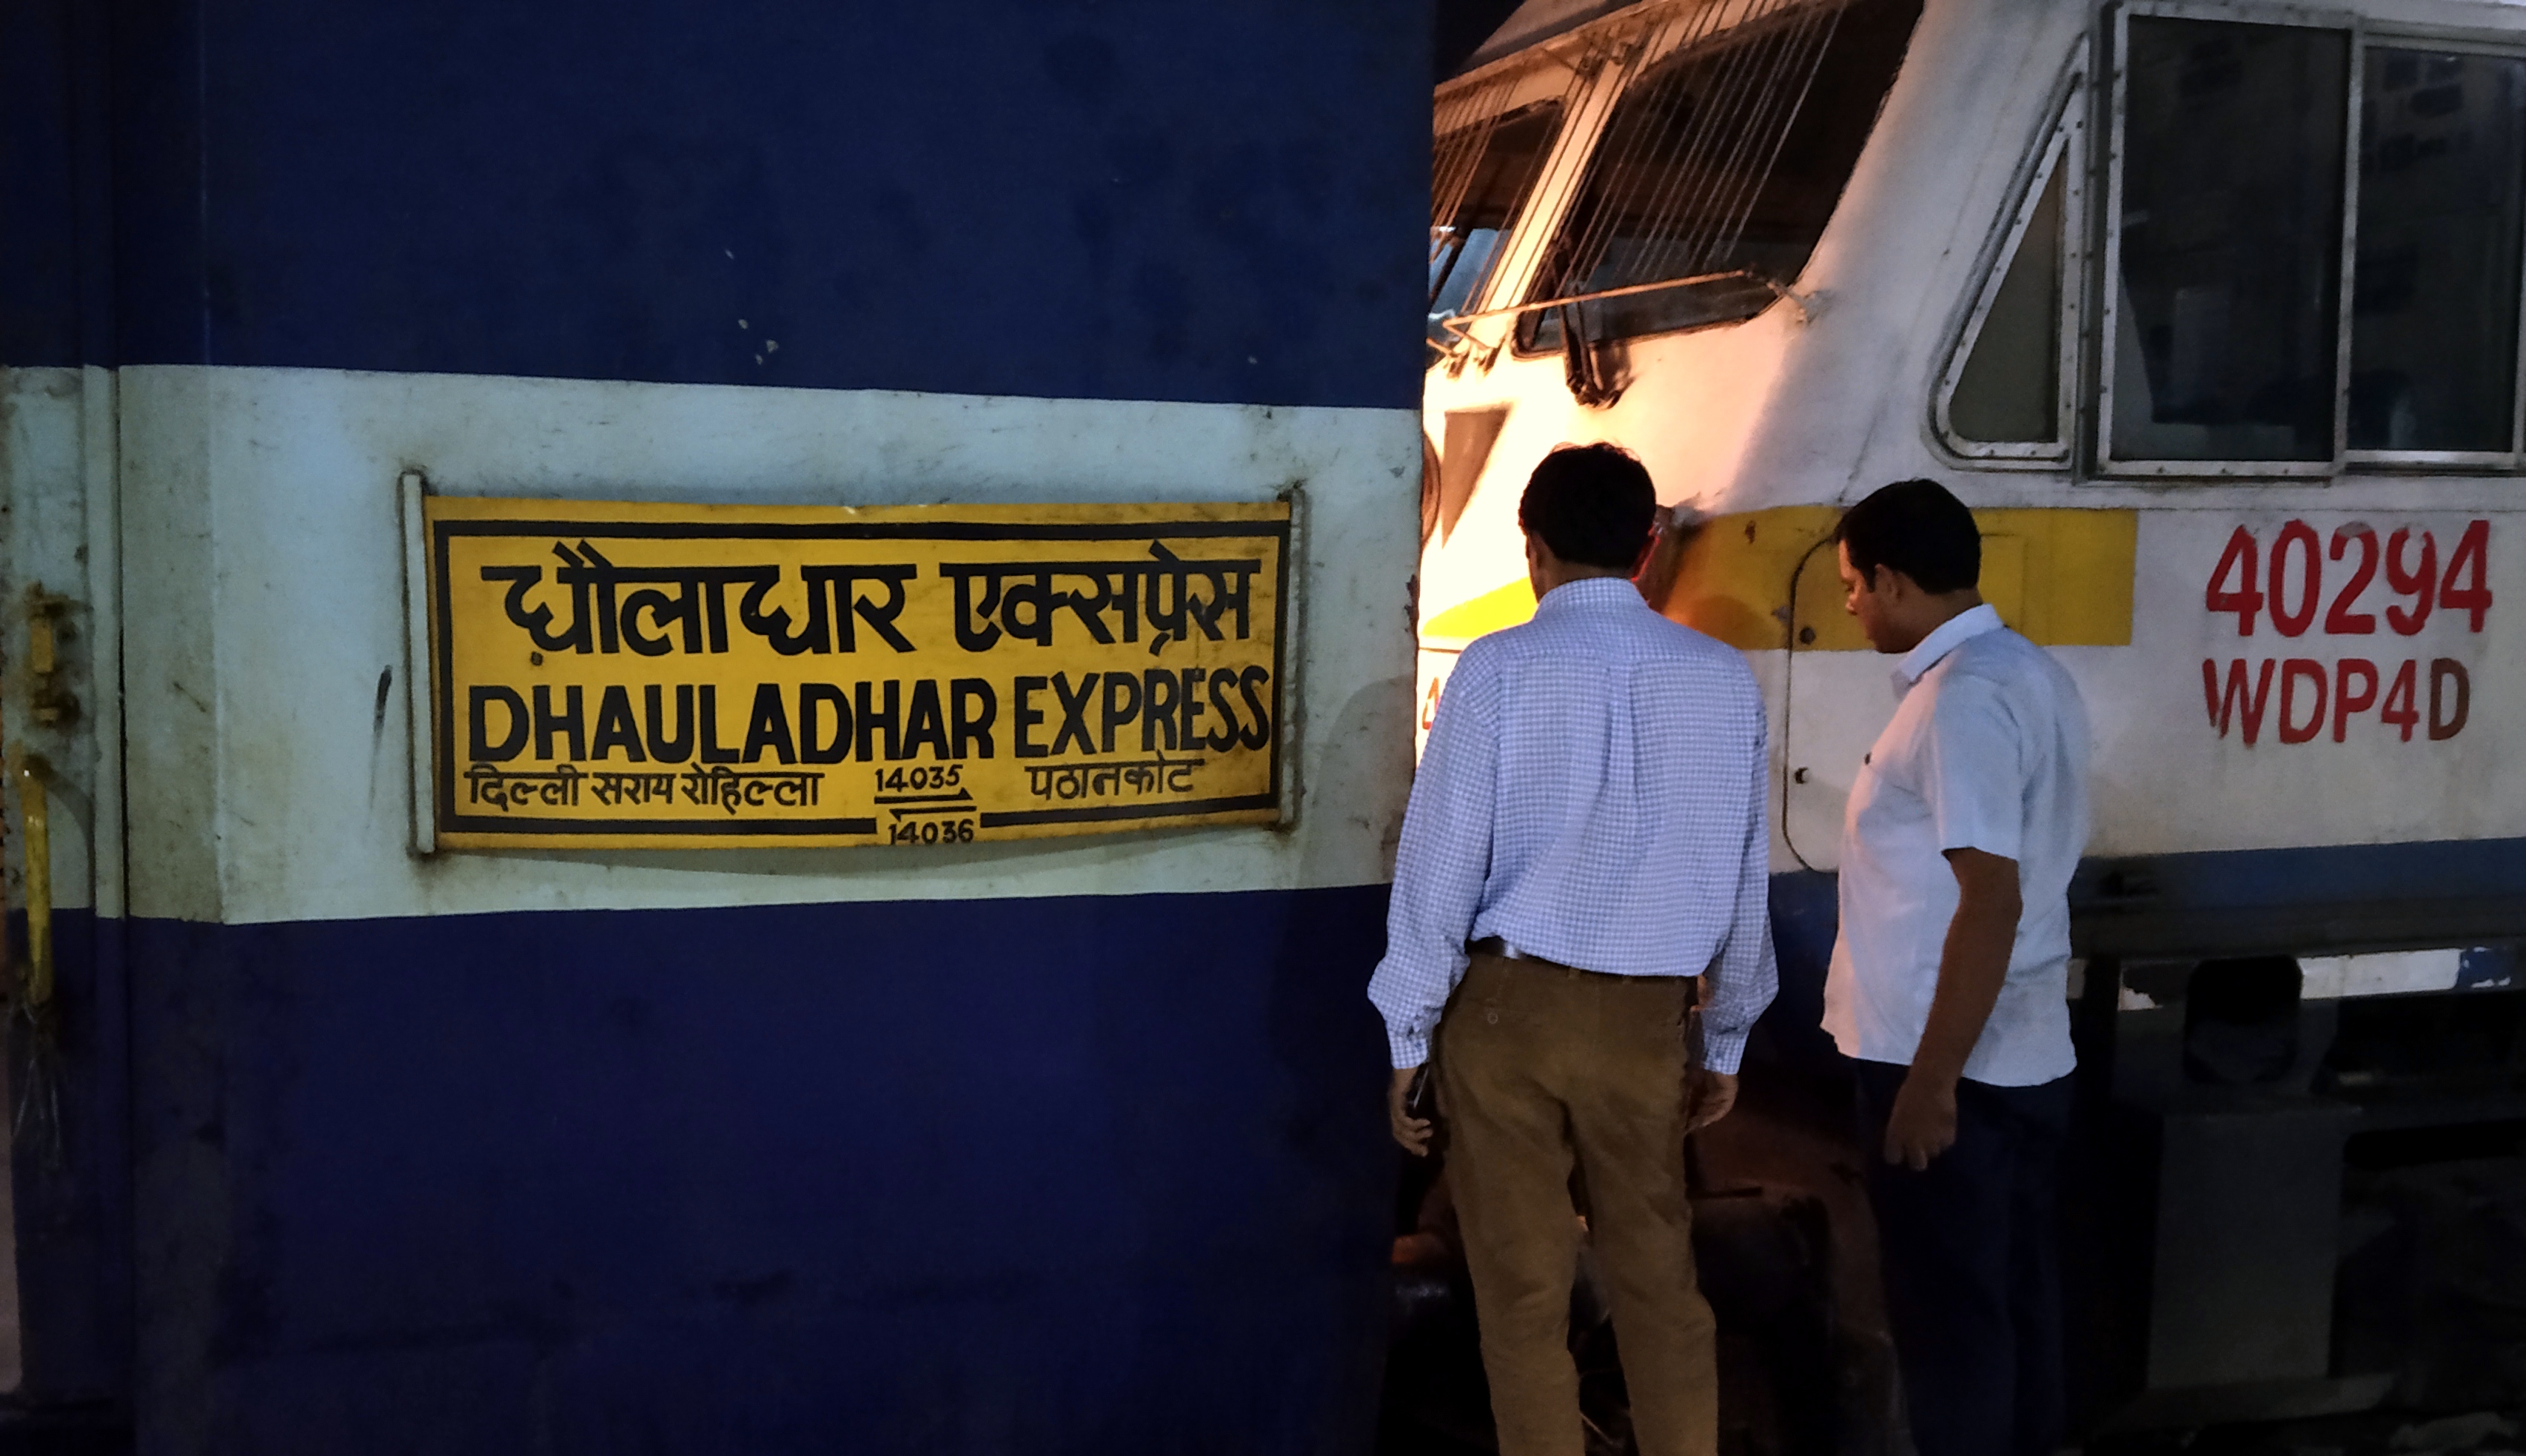 14035 Dhauladhar Express